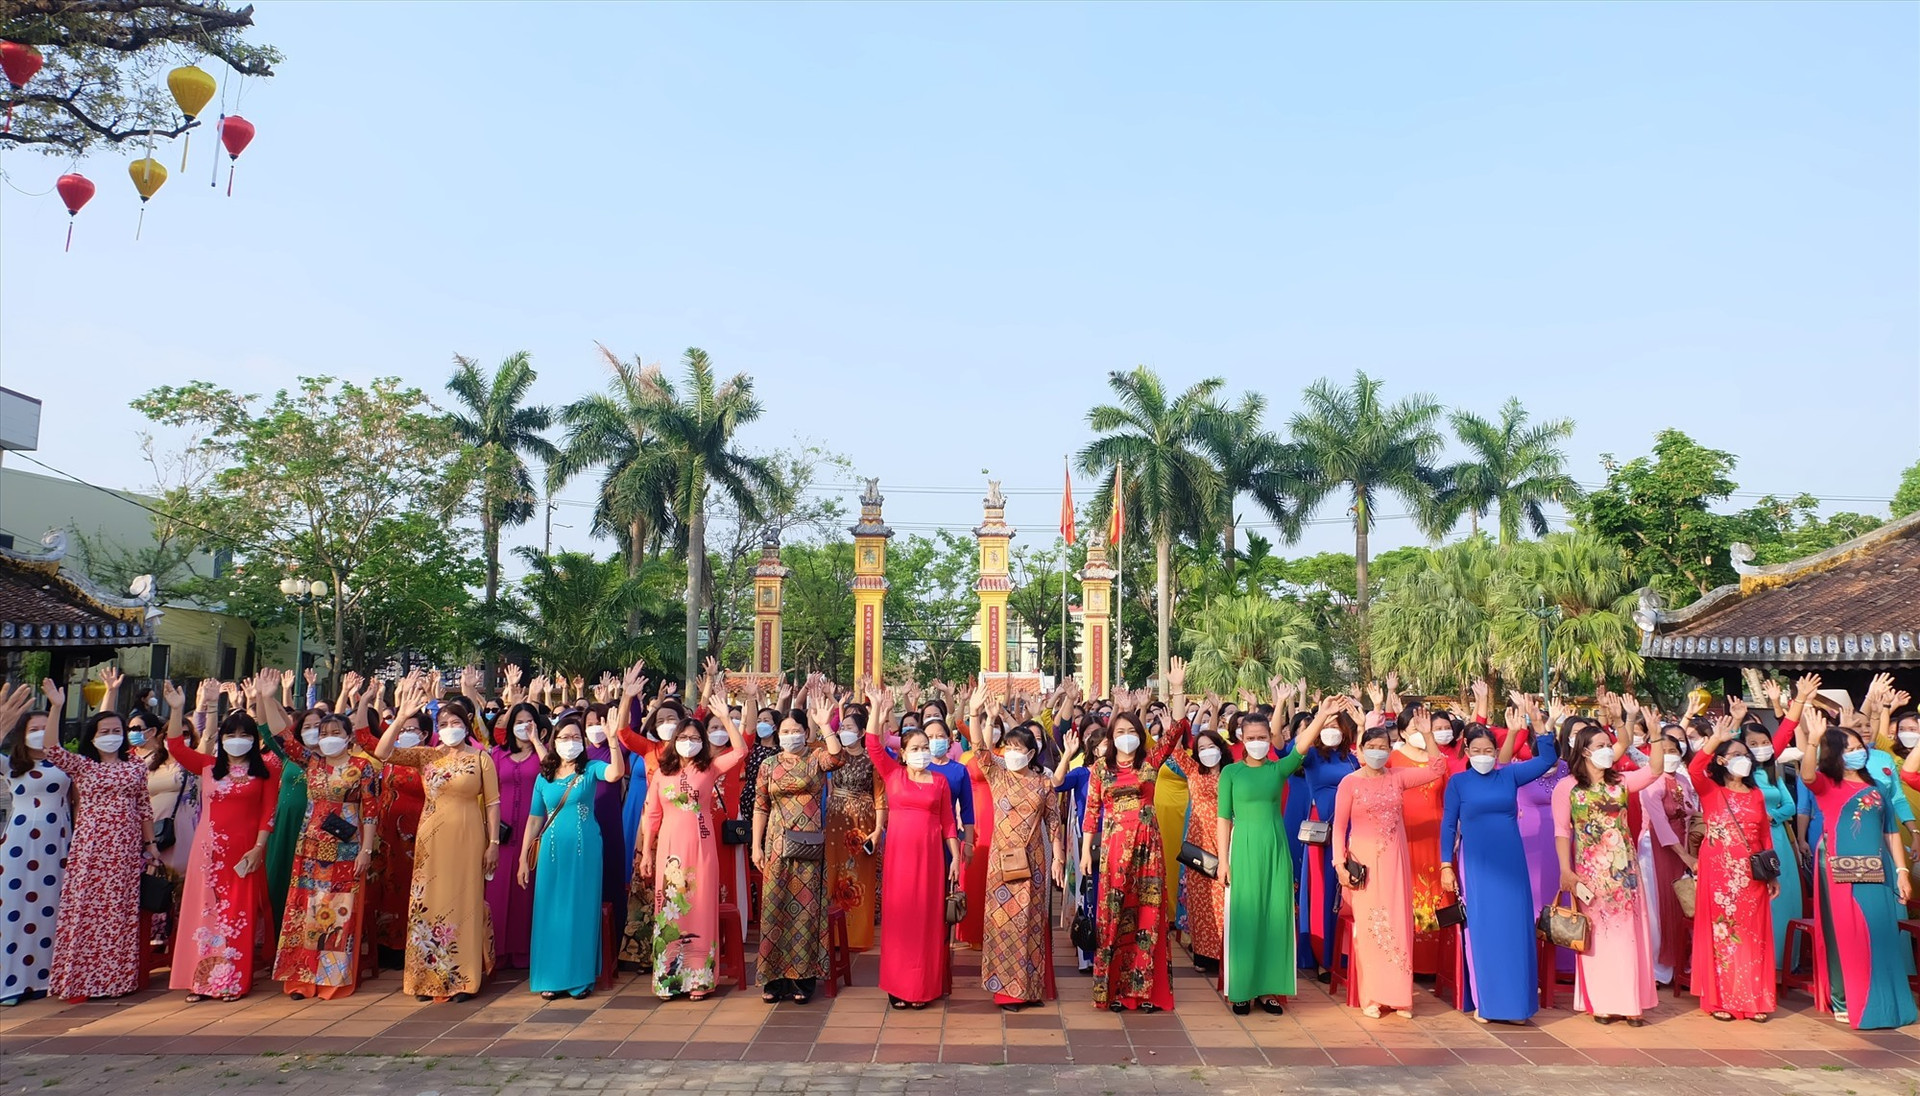 Hơn 200 chị phụ nữ tham gia phát động chương trình “Phụ nữ Tam Kỳ - duyên dáng áo dài mùa hoa sưa” tại di tích Văn Thánh Khổng Miếu. Ảnh: M.L